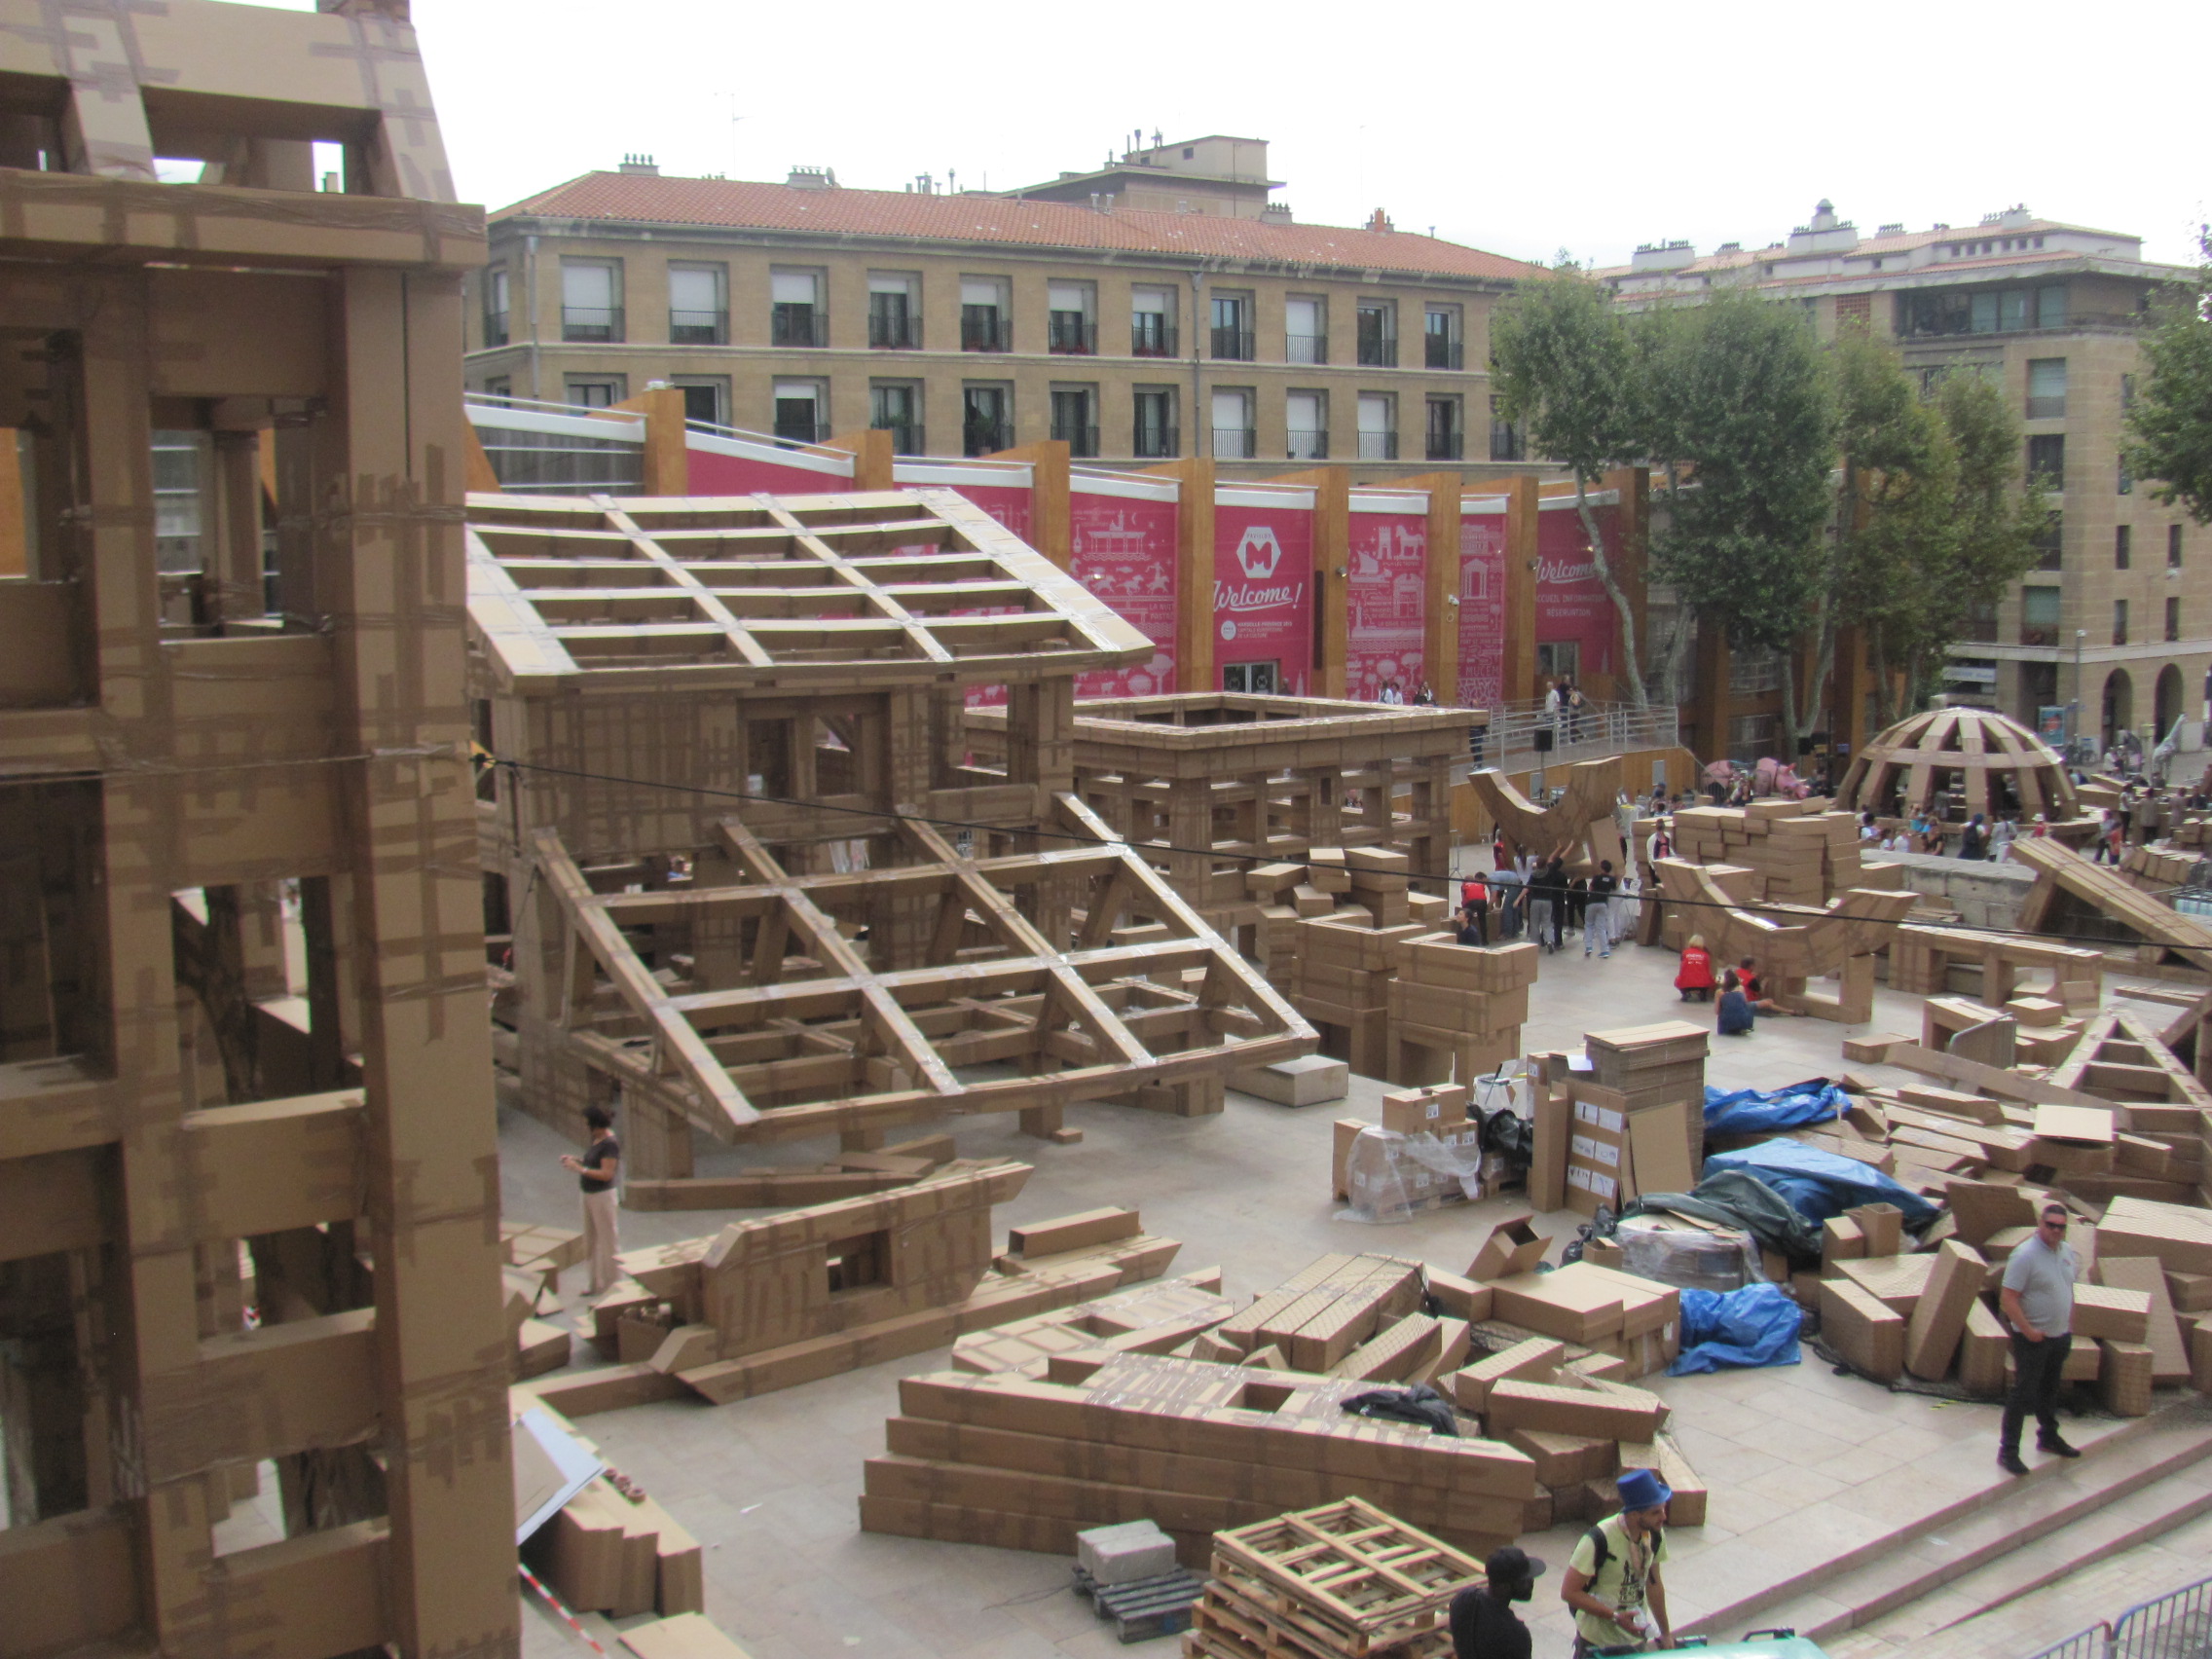 INSOLITE – Une Ville éphèmère en carton se construit place Bargemon à Marseille dans le cadre de Marseille Provence 2013.